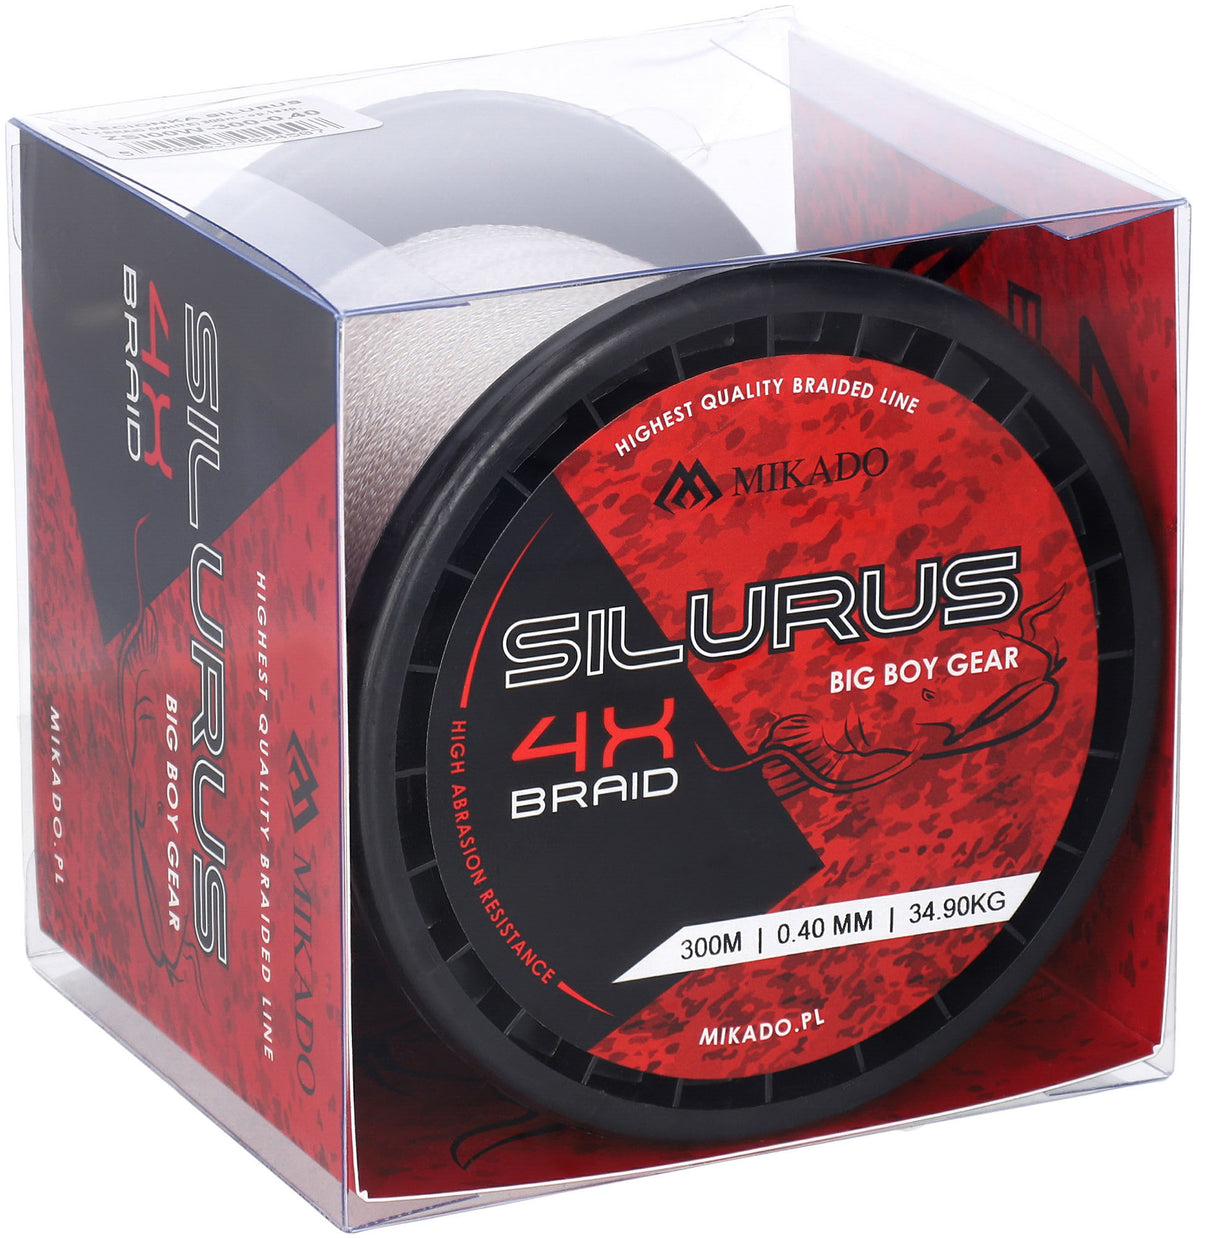 Silurus 4X Braid ist eine starke geflochtene Schnur mit hoher Abriebfestigkeit. Dichte fasern garantieren eine hohe Lebensdauer. Eine hochwertige geflochtene Schnur mit guten Eigenschaften, ideal zum Wallerfischen - auch in hindernisreichen Gewässern. 